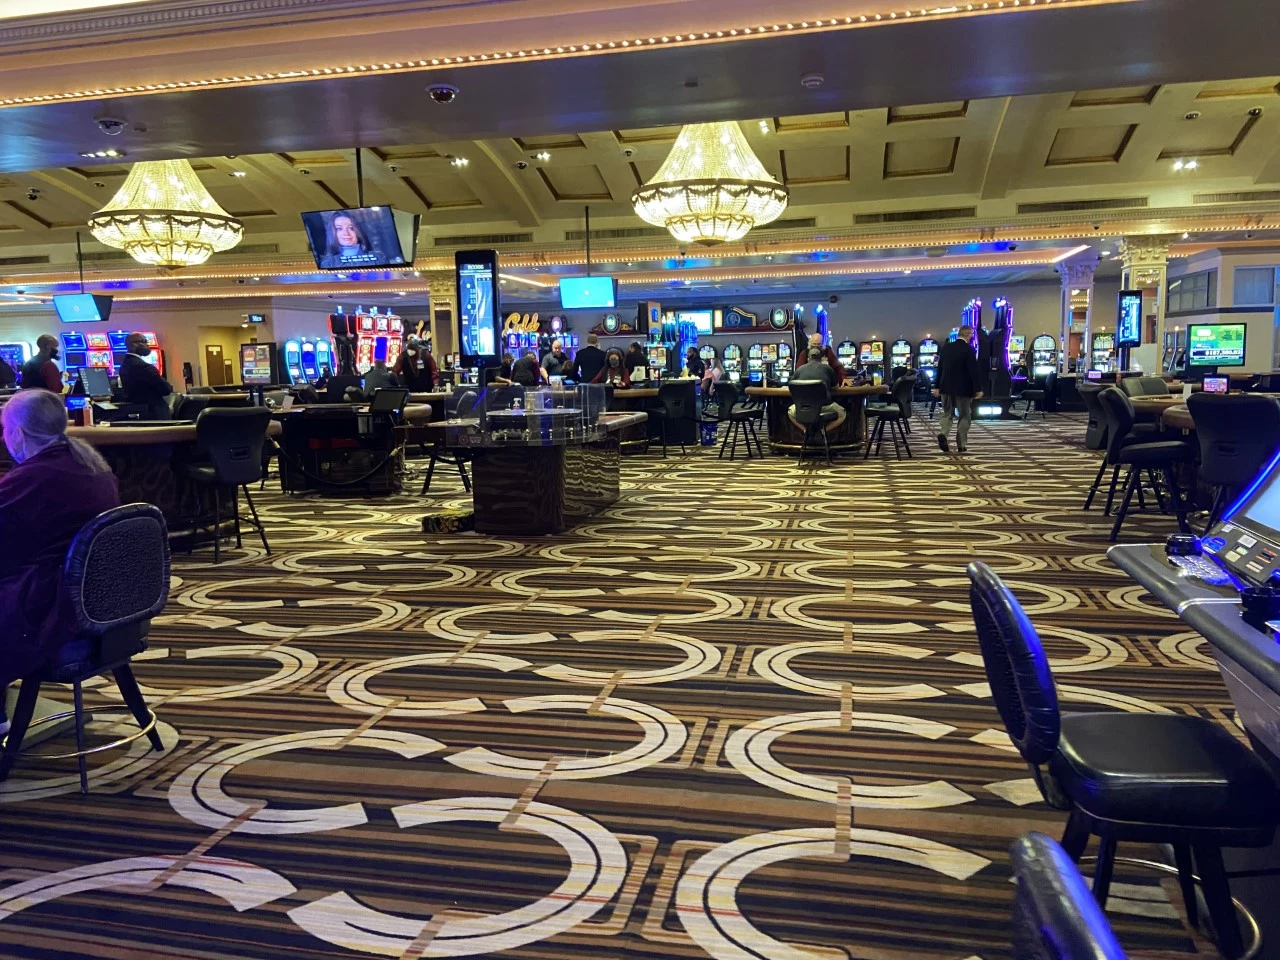 promos for horseshoe casino shreveport